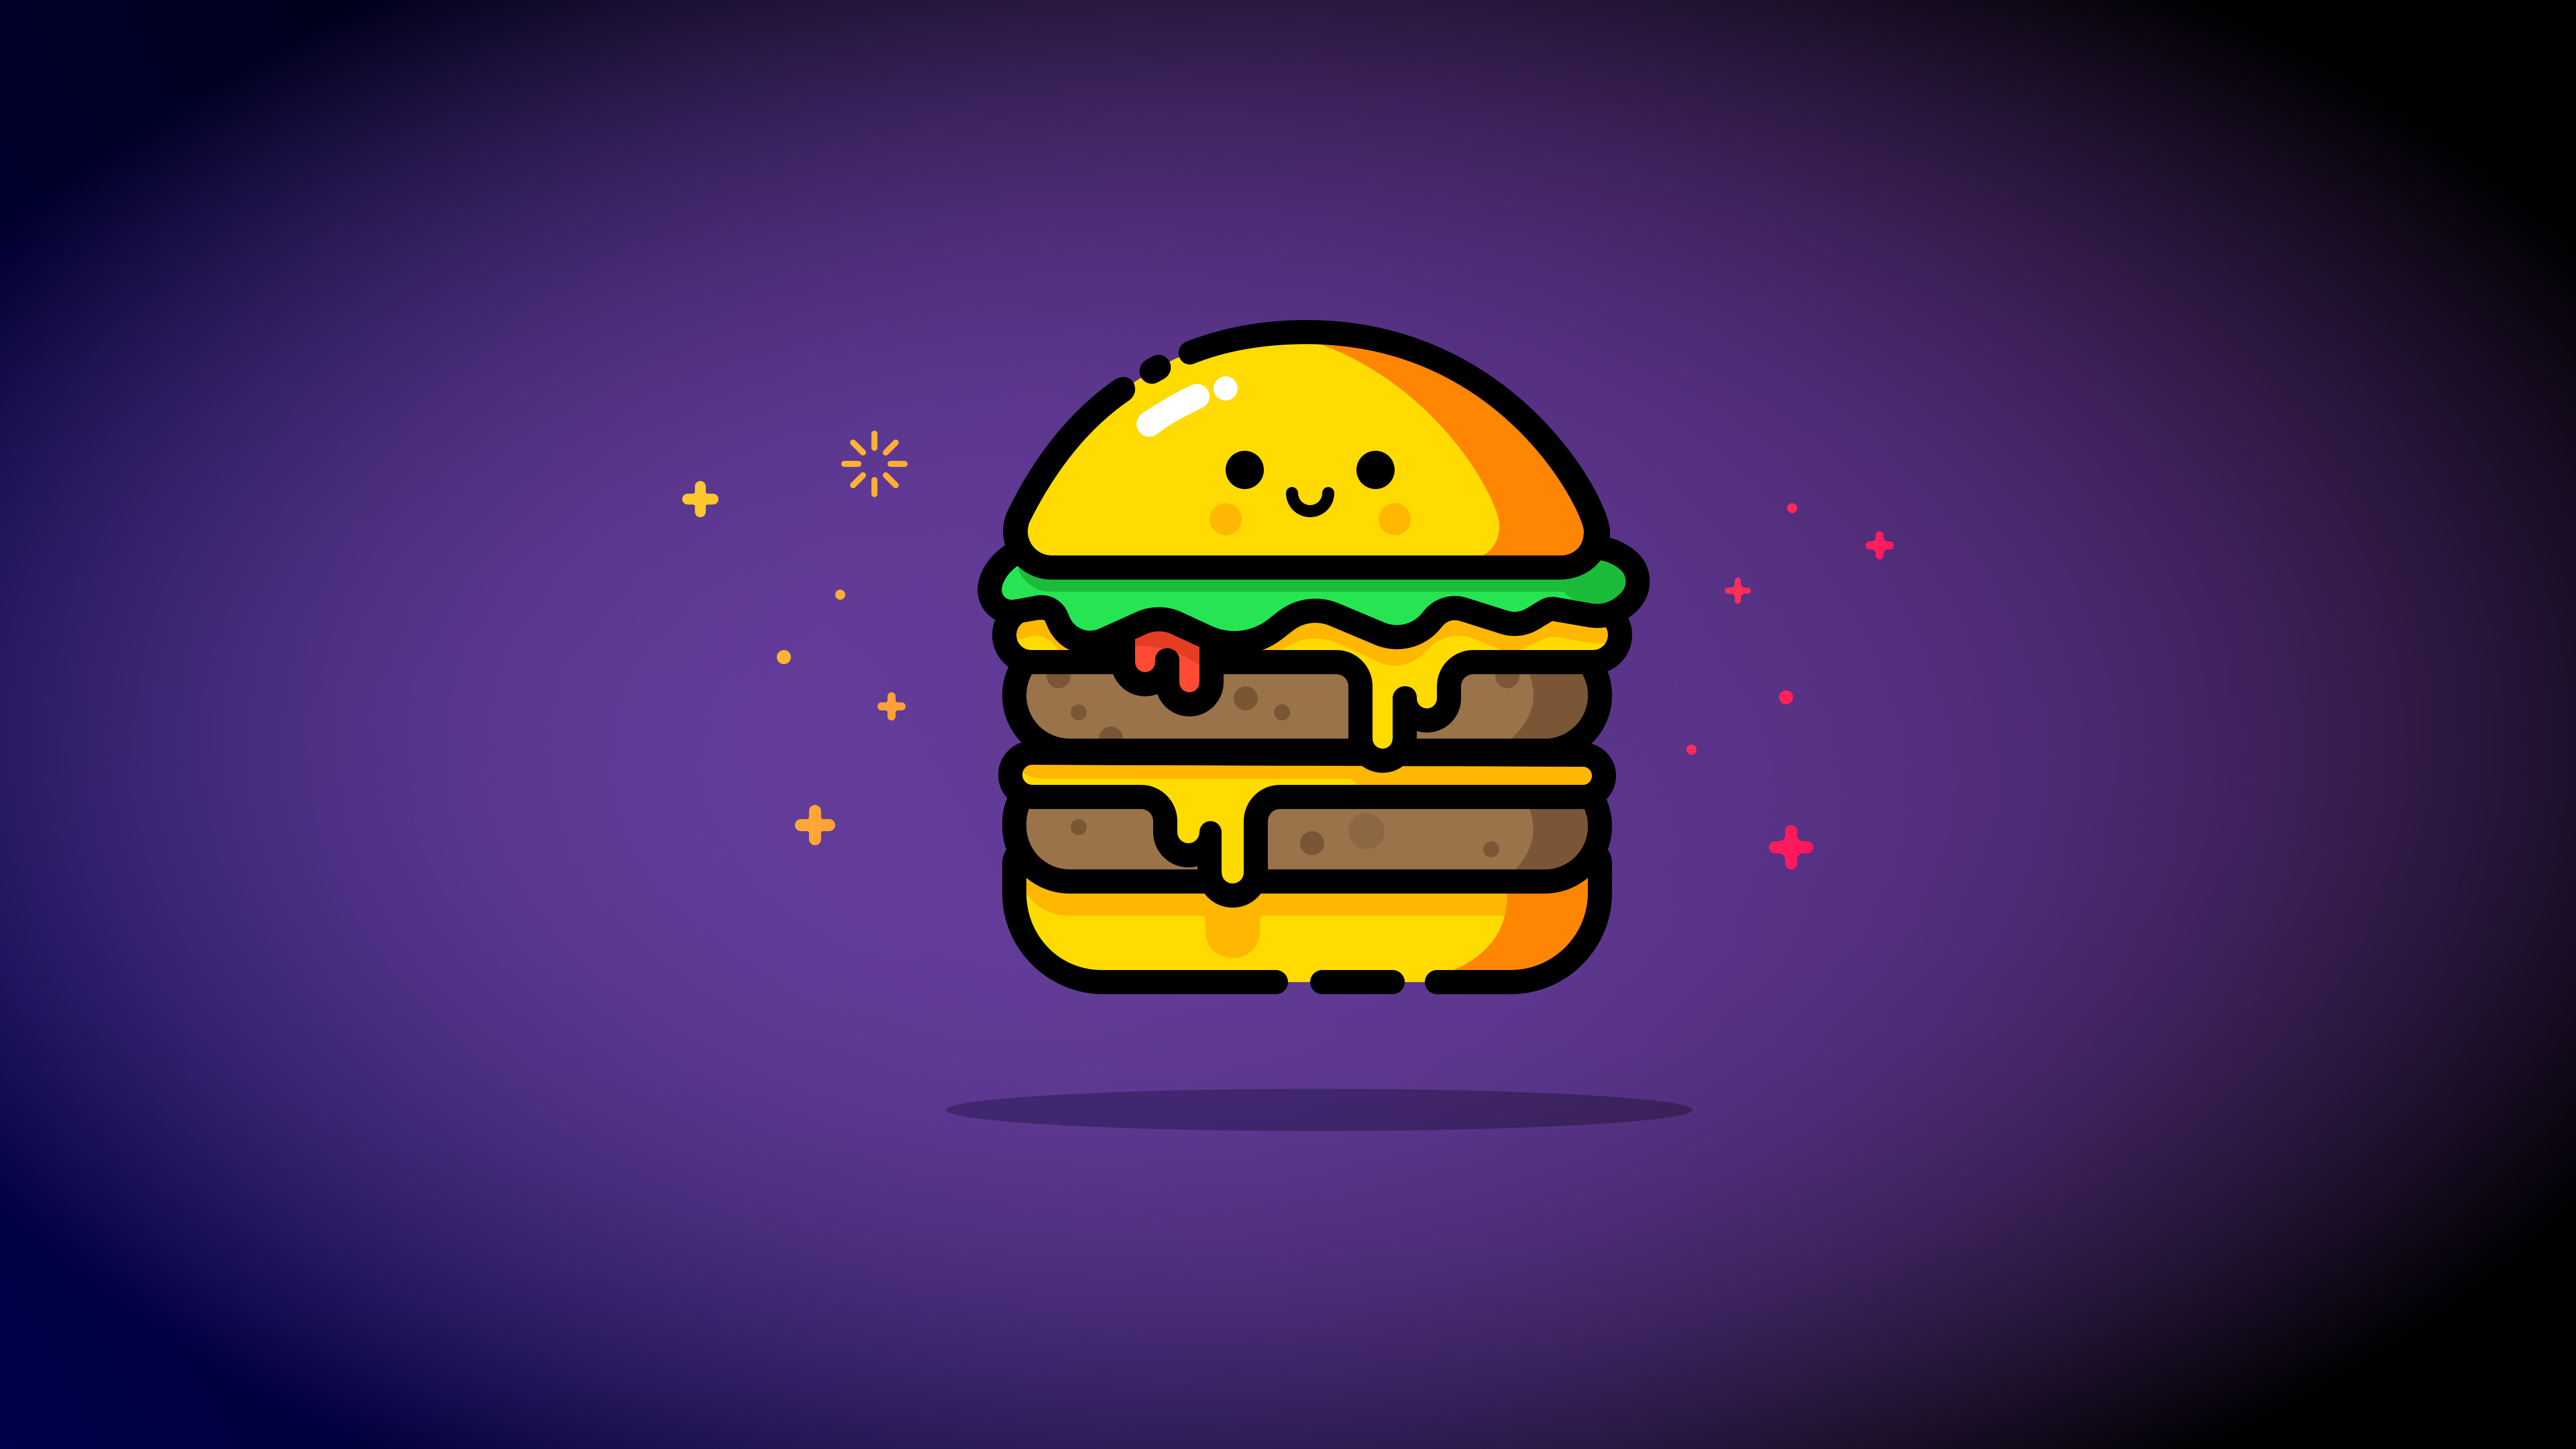 HD cheeseburger wallpapers | Peakpx